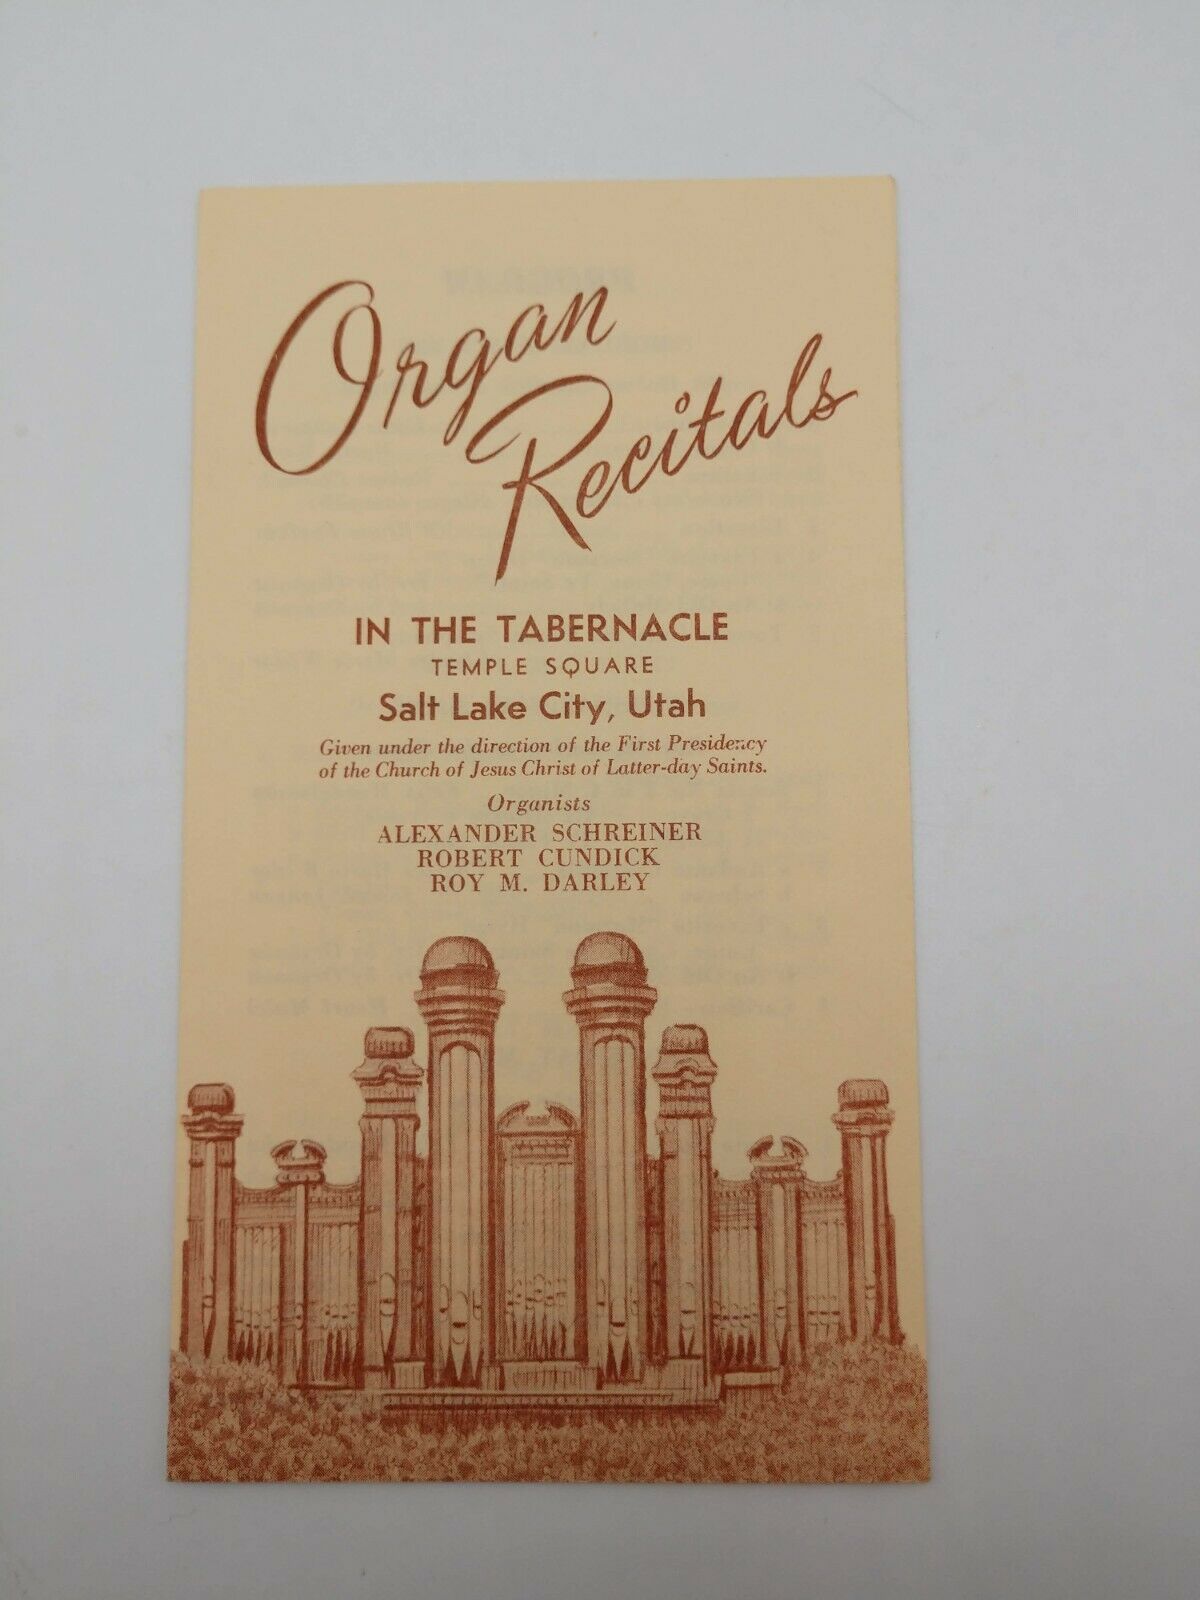 1969 Organ Recitals In The Tabernacle Temple Square Salt Lake City Utah Program